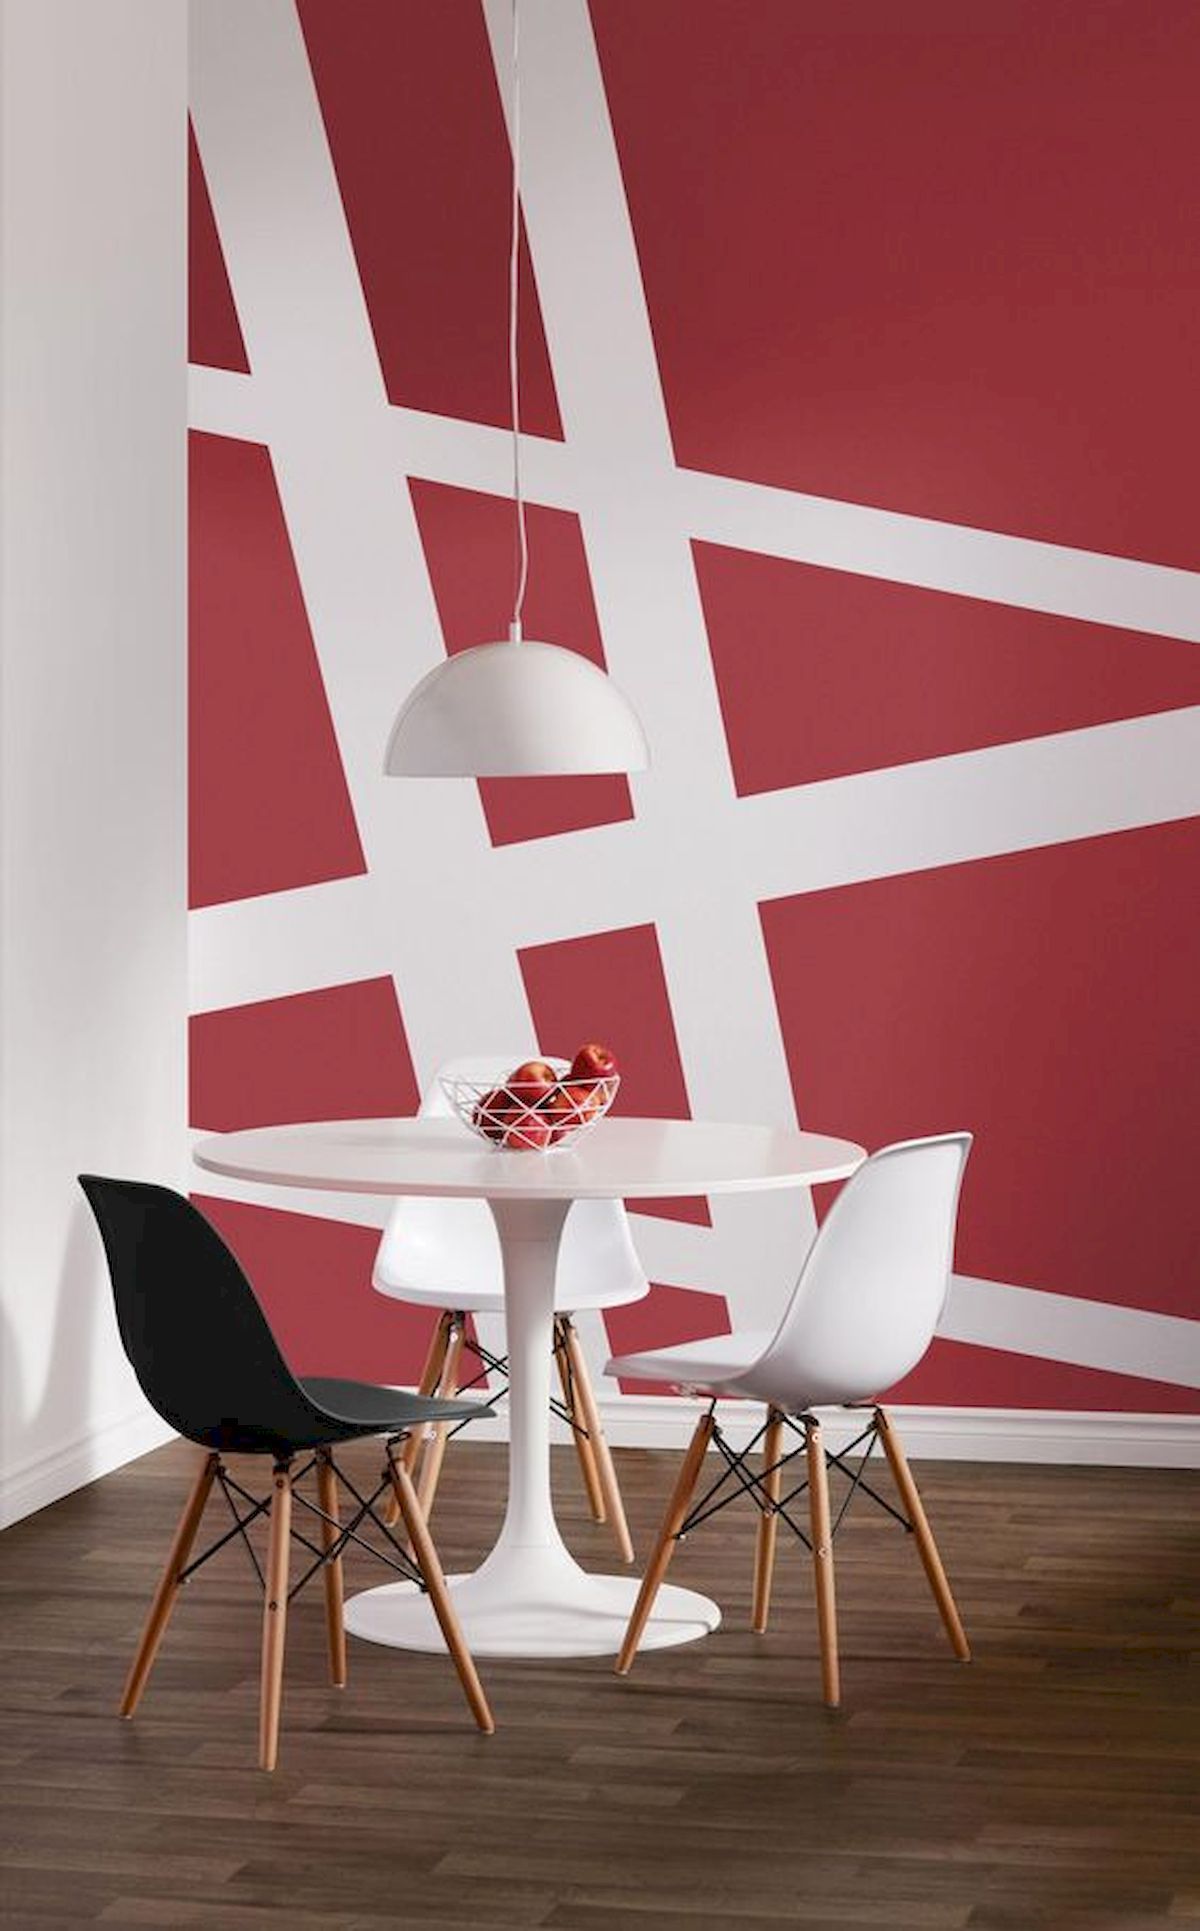 Ideen Beetgestaltung Schön 60 Best Geometric Wall Art Paint Design Ideas 1